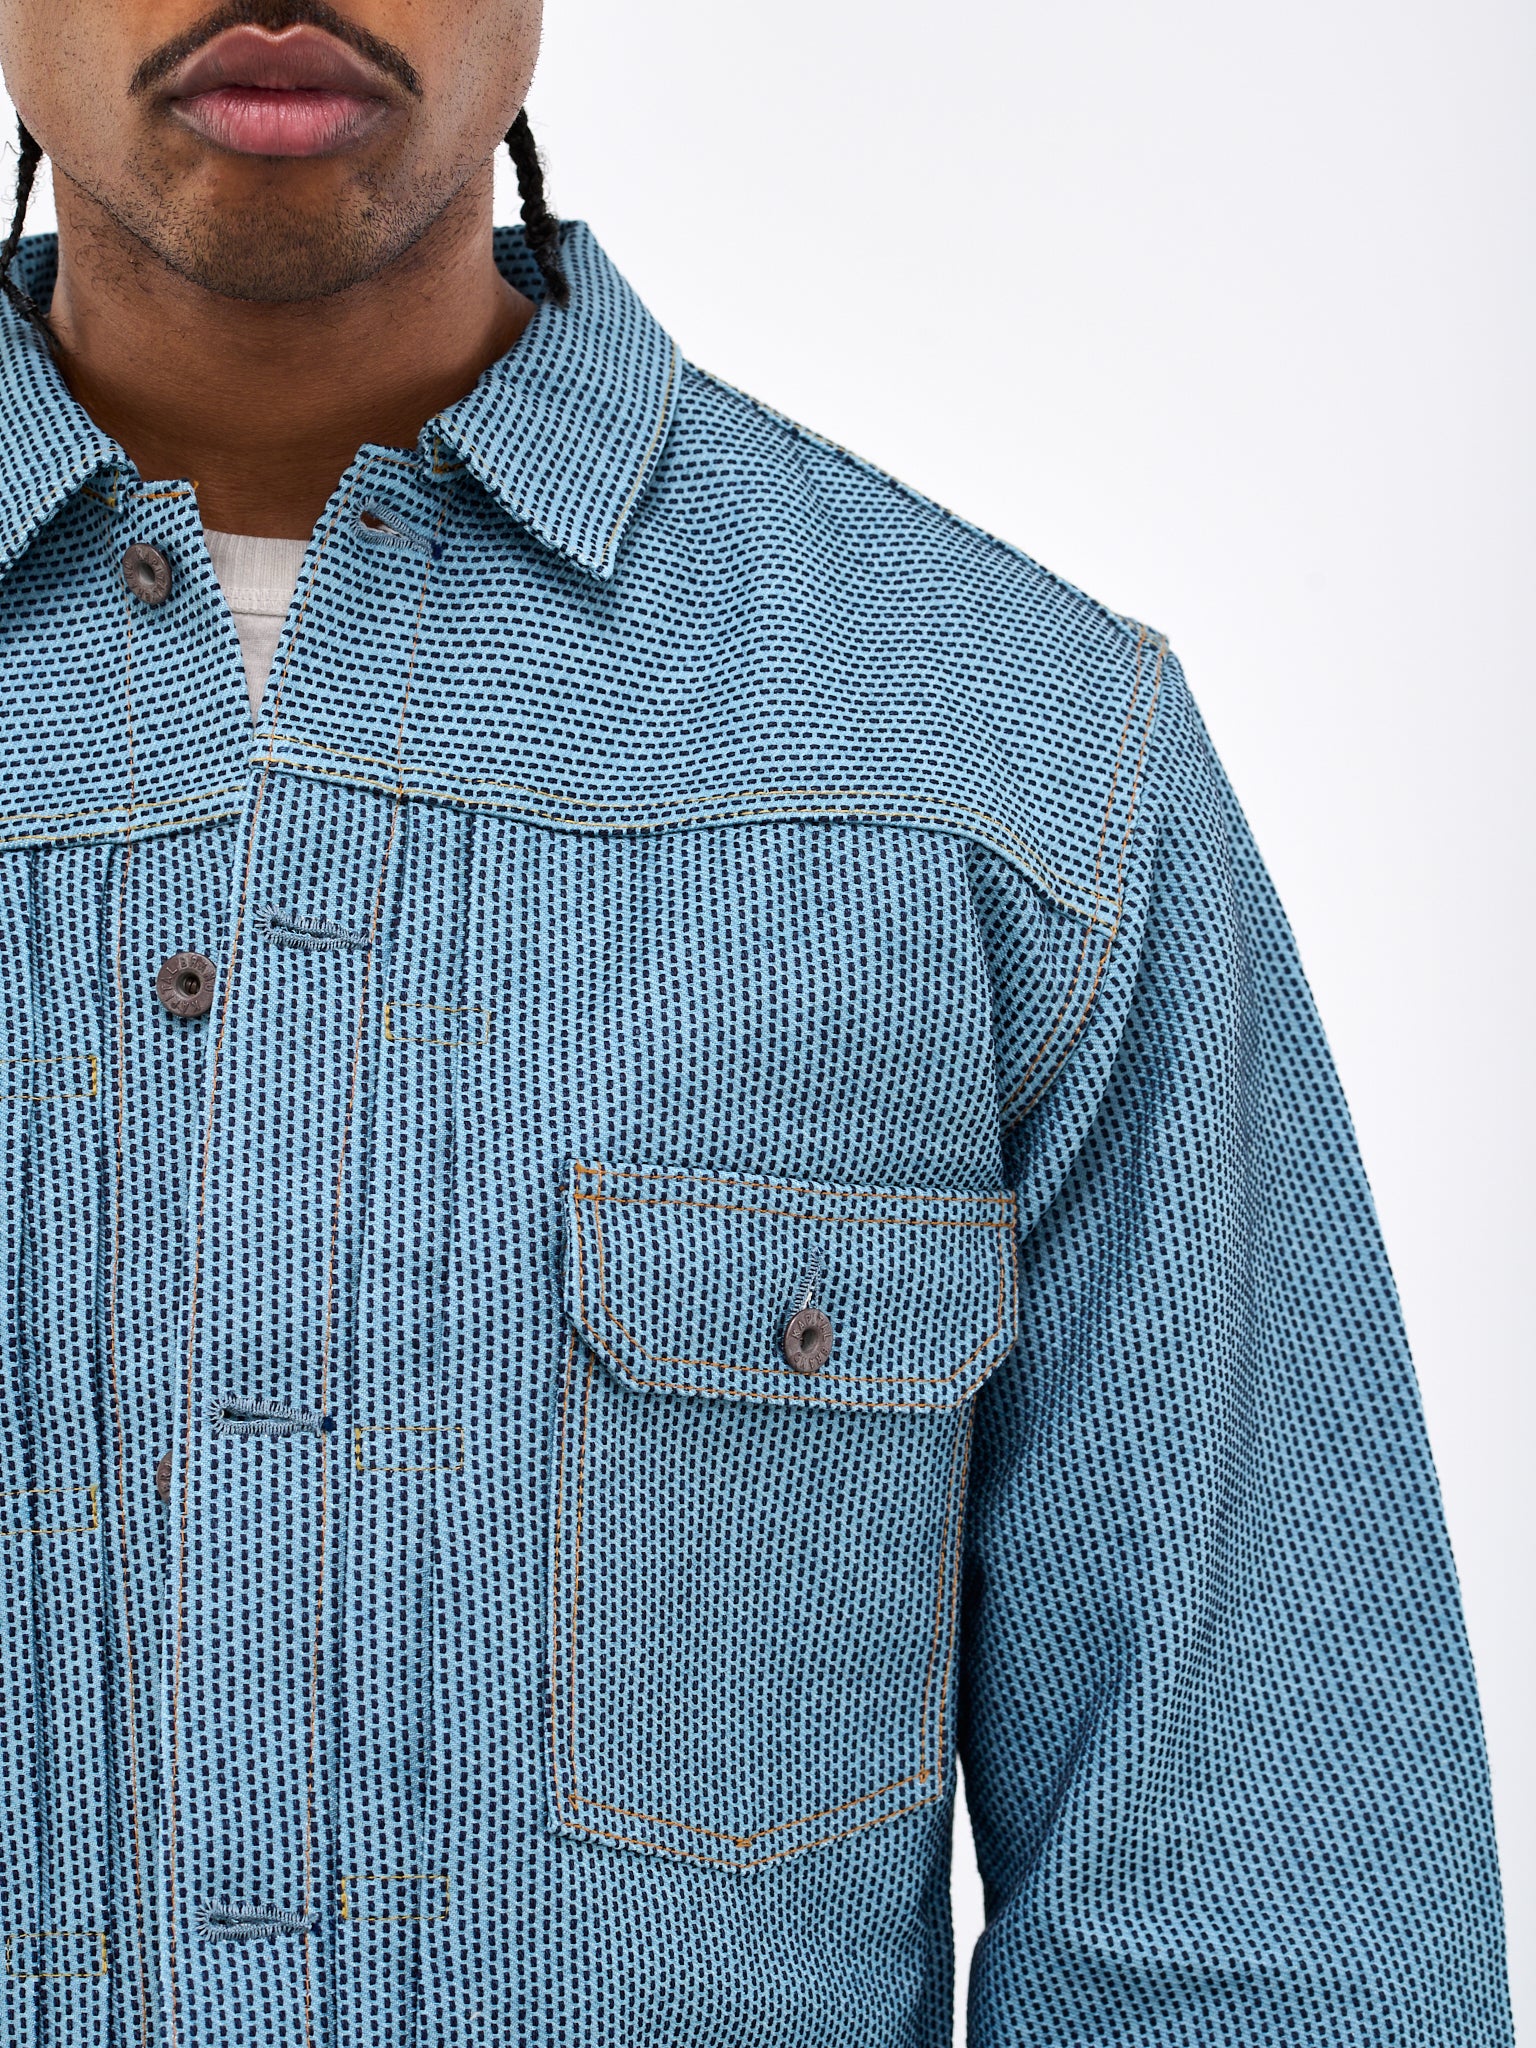 KAPITAL Stitched Jacket | H. Lorenzo - detail 1